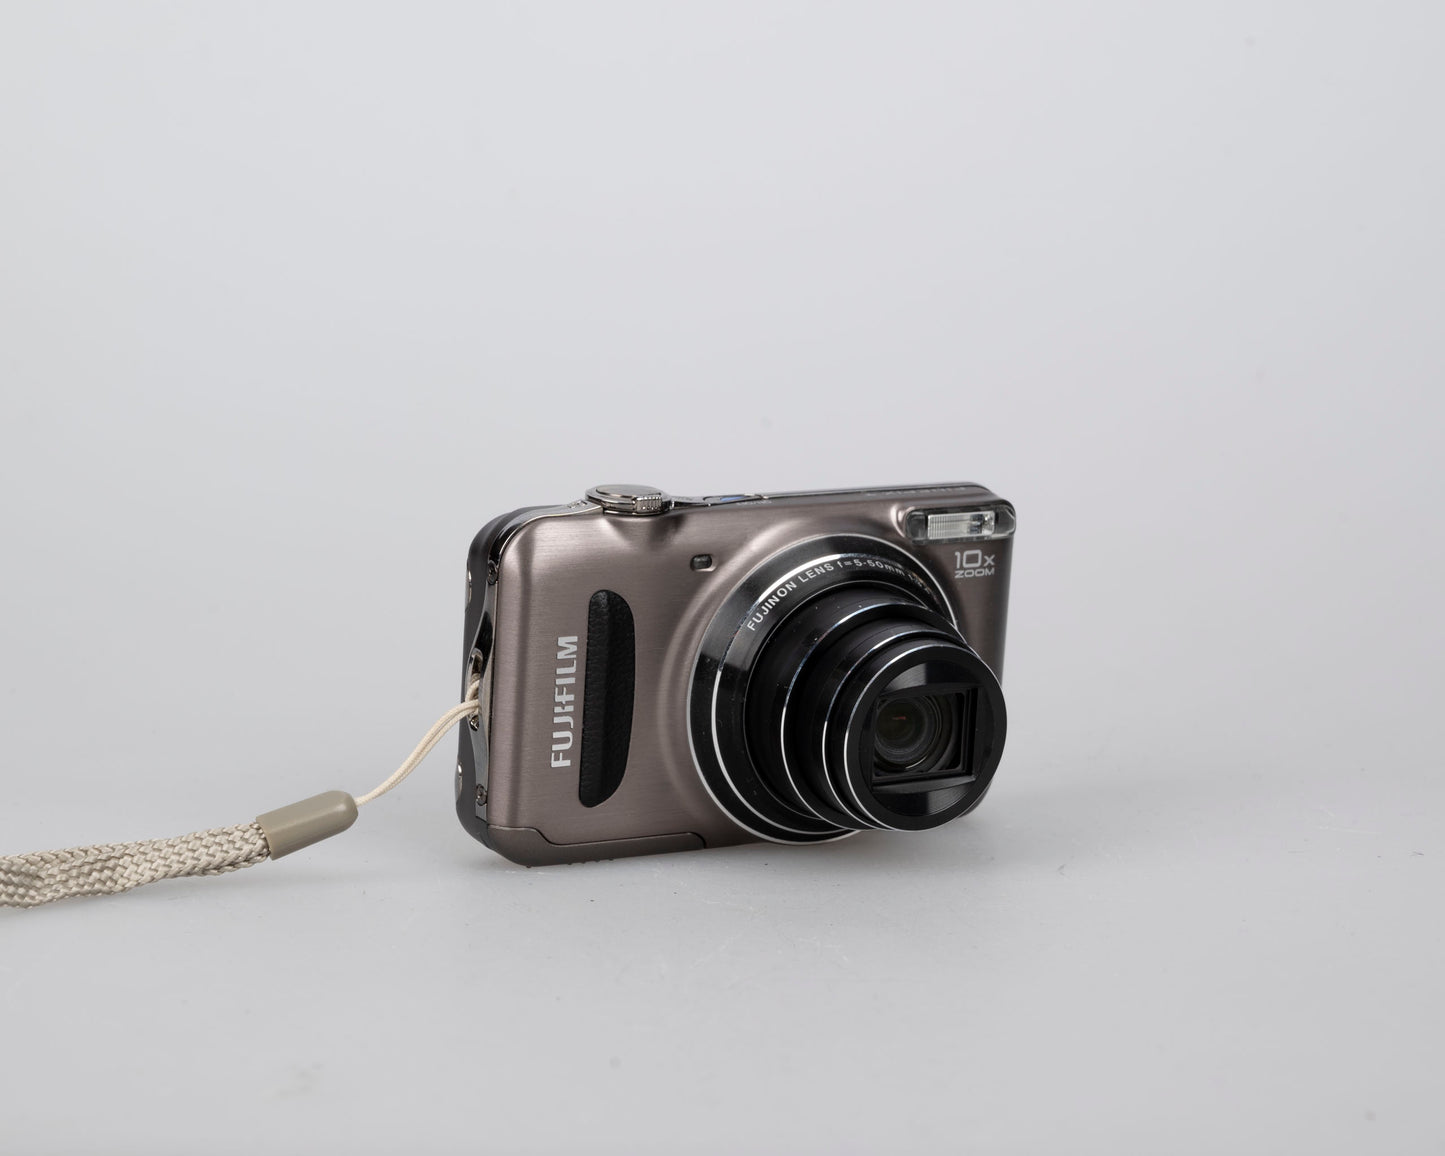 Appareil photo numérique Fujifilm Finepix T300 avec capteur CCD 14 MP avec boîtier + batterie + chargeur + manuel